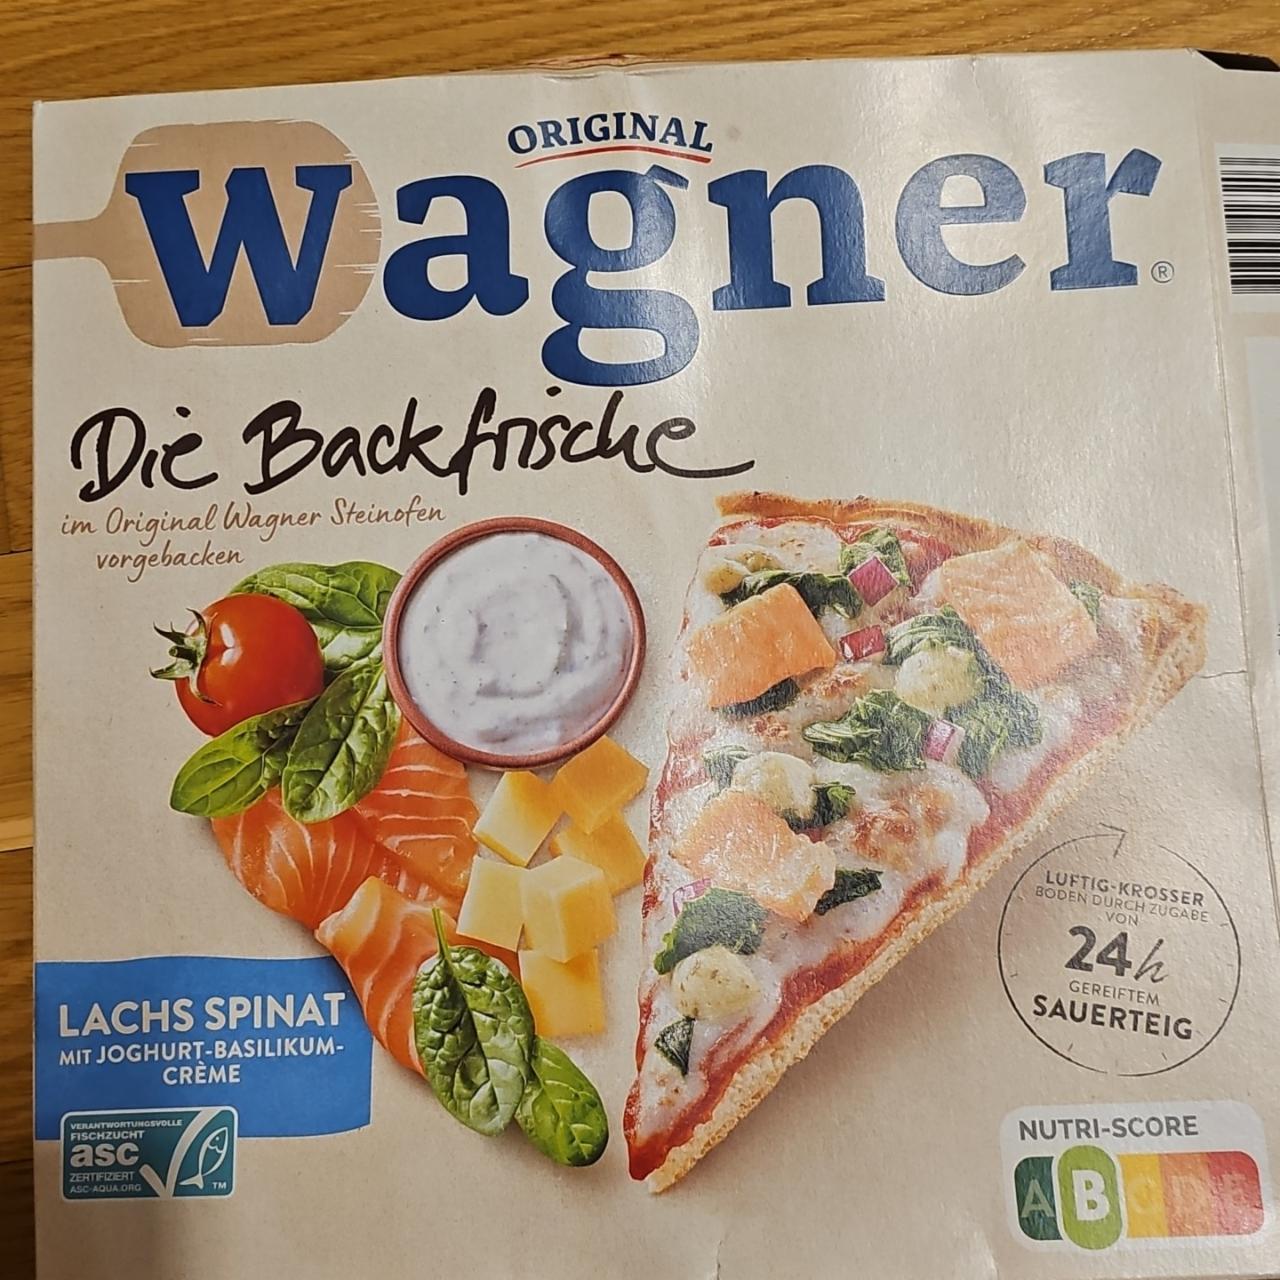 Fotografie - Pizza Die Backfrische Lachs Spinat Original Wagner